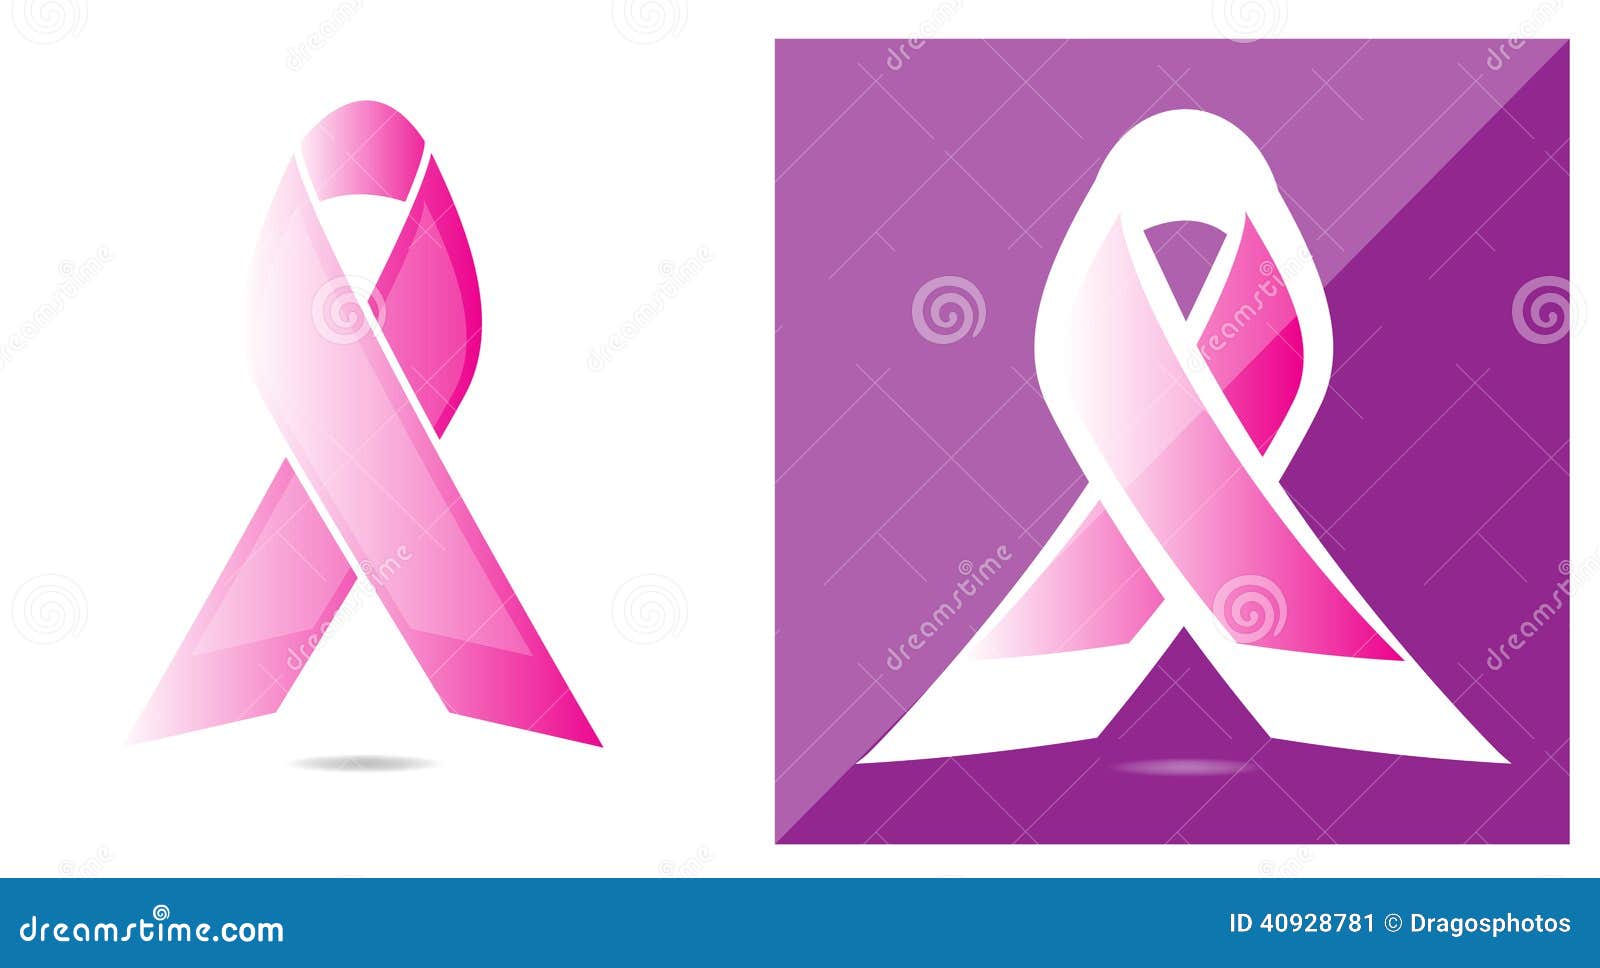 Breast shapes vector illustration - Stock Illustration [55170449] - PIXTA